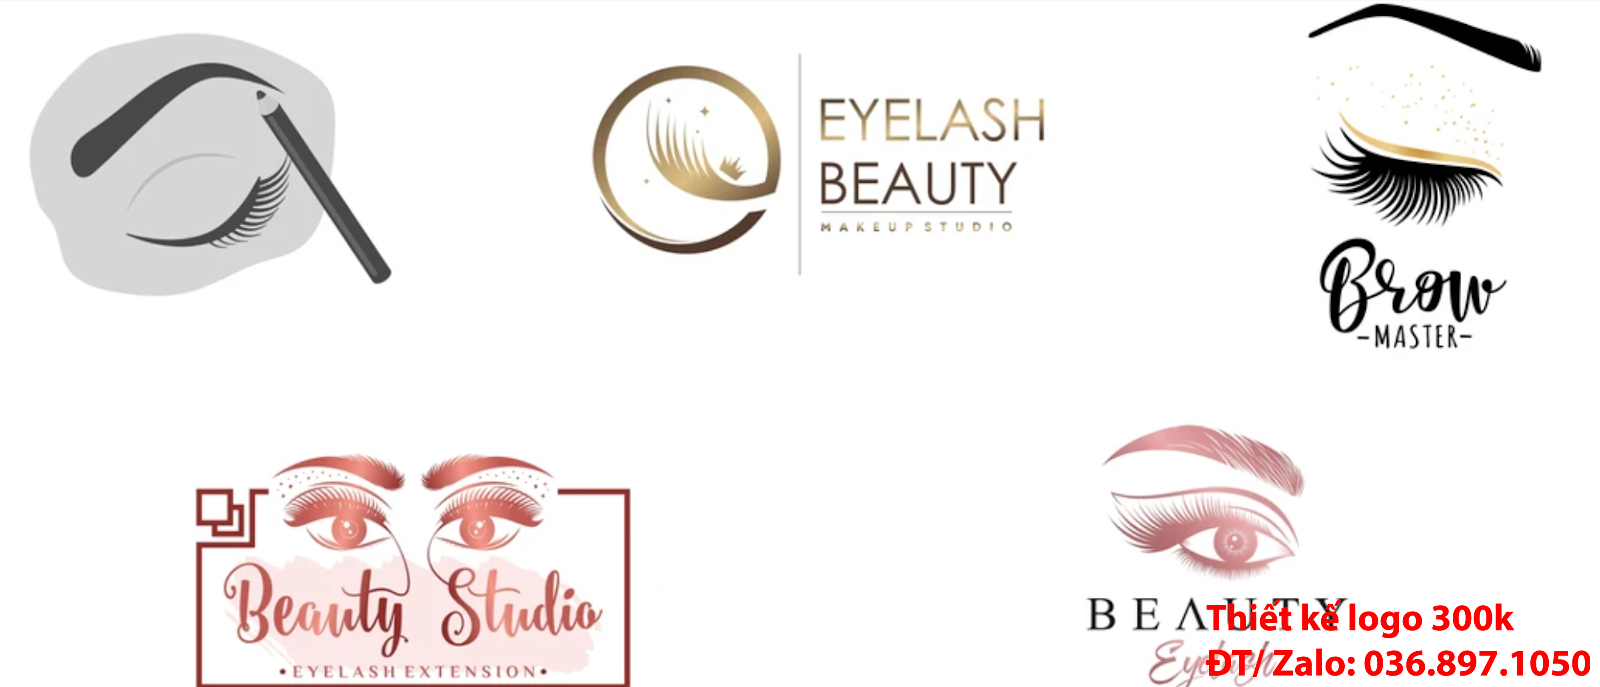 Nơi uy tín nhất Hà Nội cung cấp dịch vụ tạo thiết kế Logo thẩm mỹ lông mi mắt đẹp nhất hiện nay online giá rẻ chất lượng